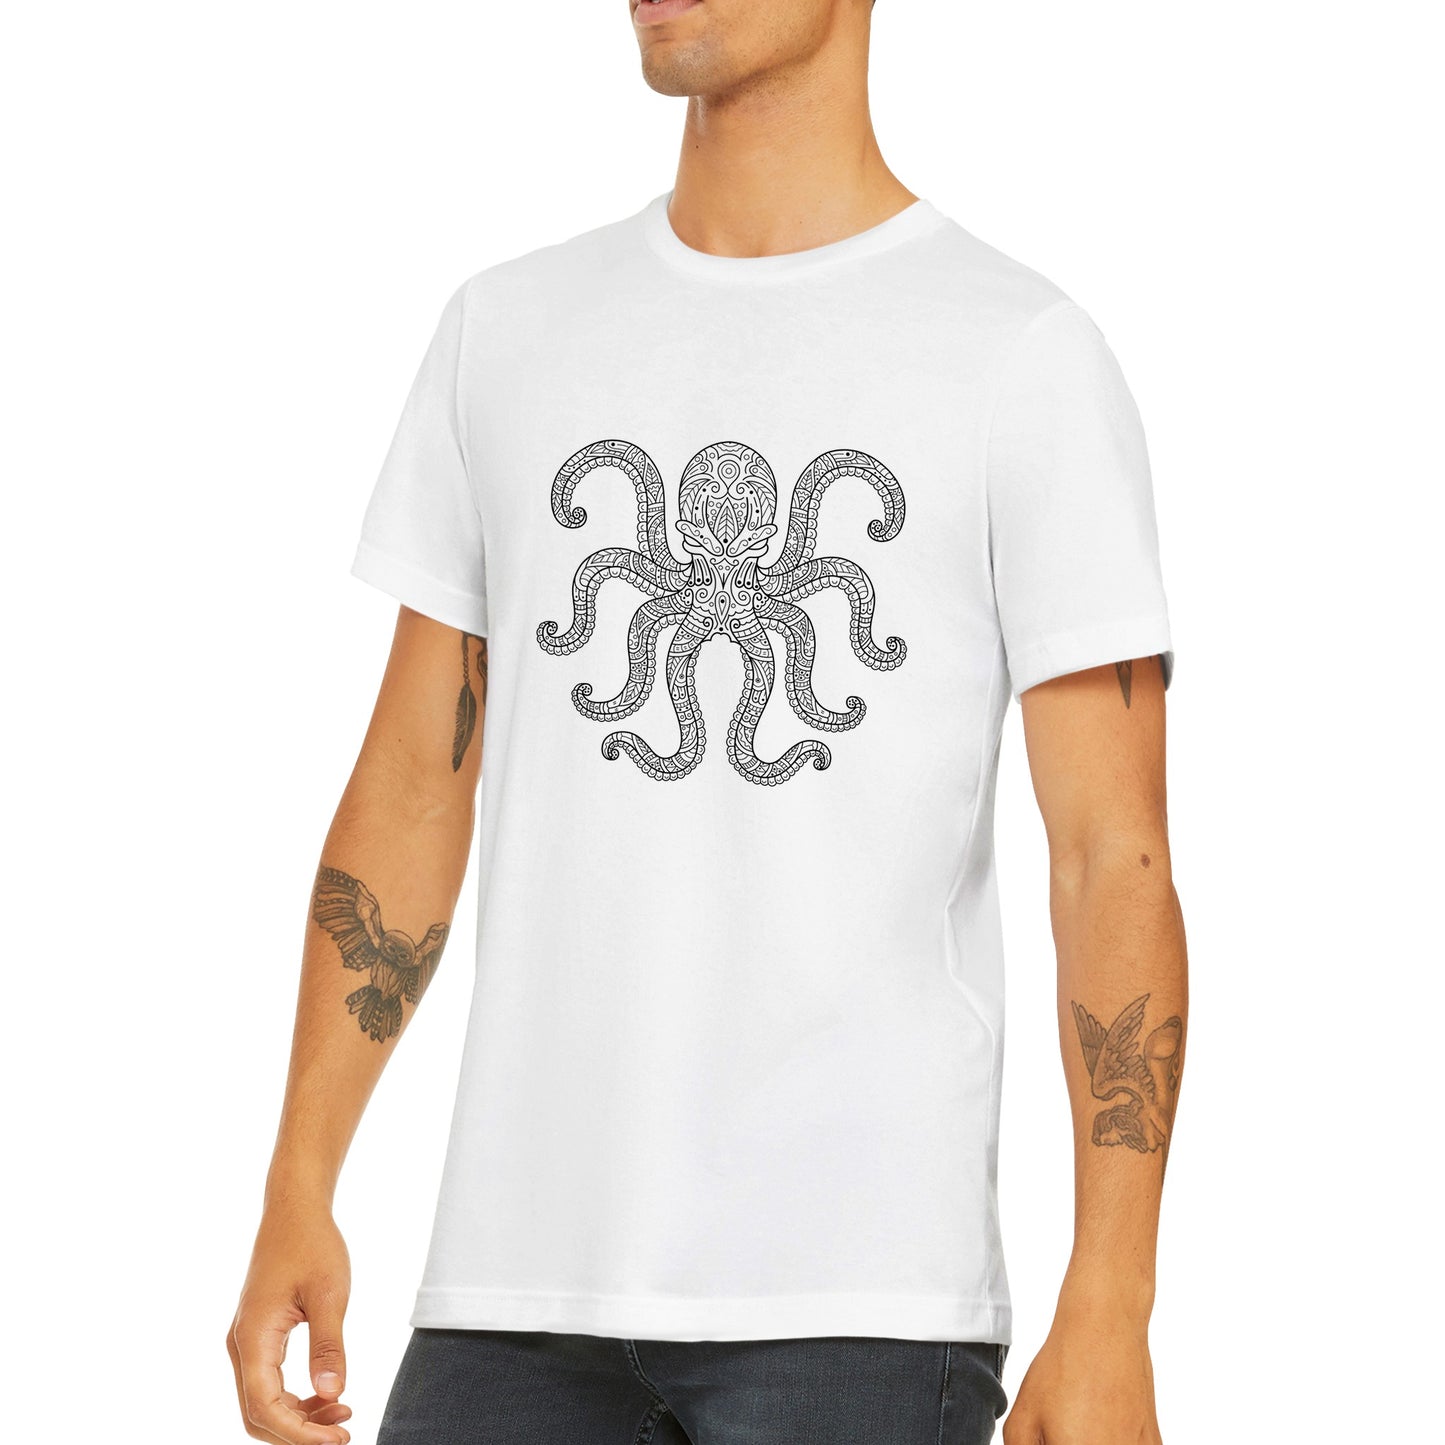 The Kraken T-shirt